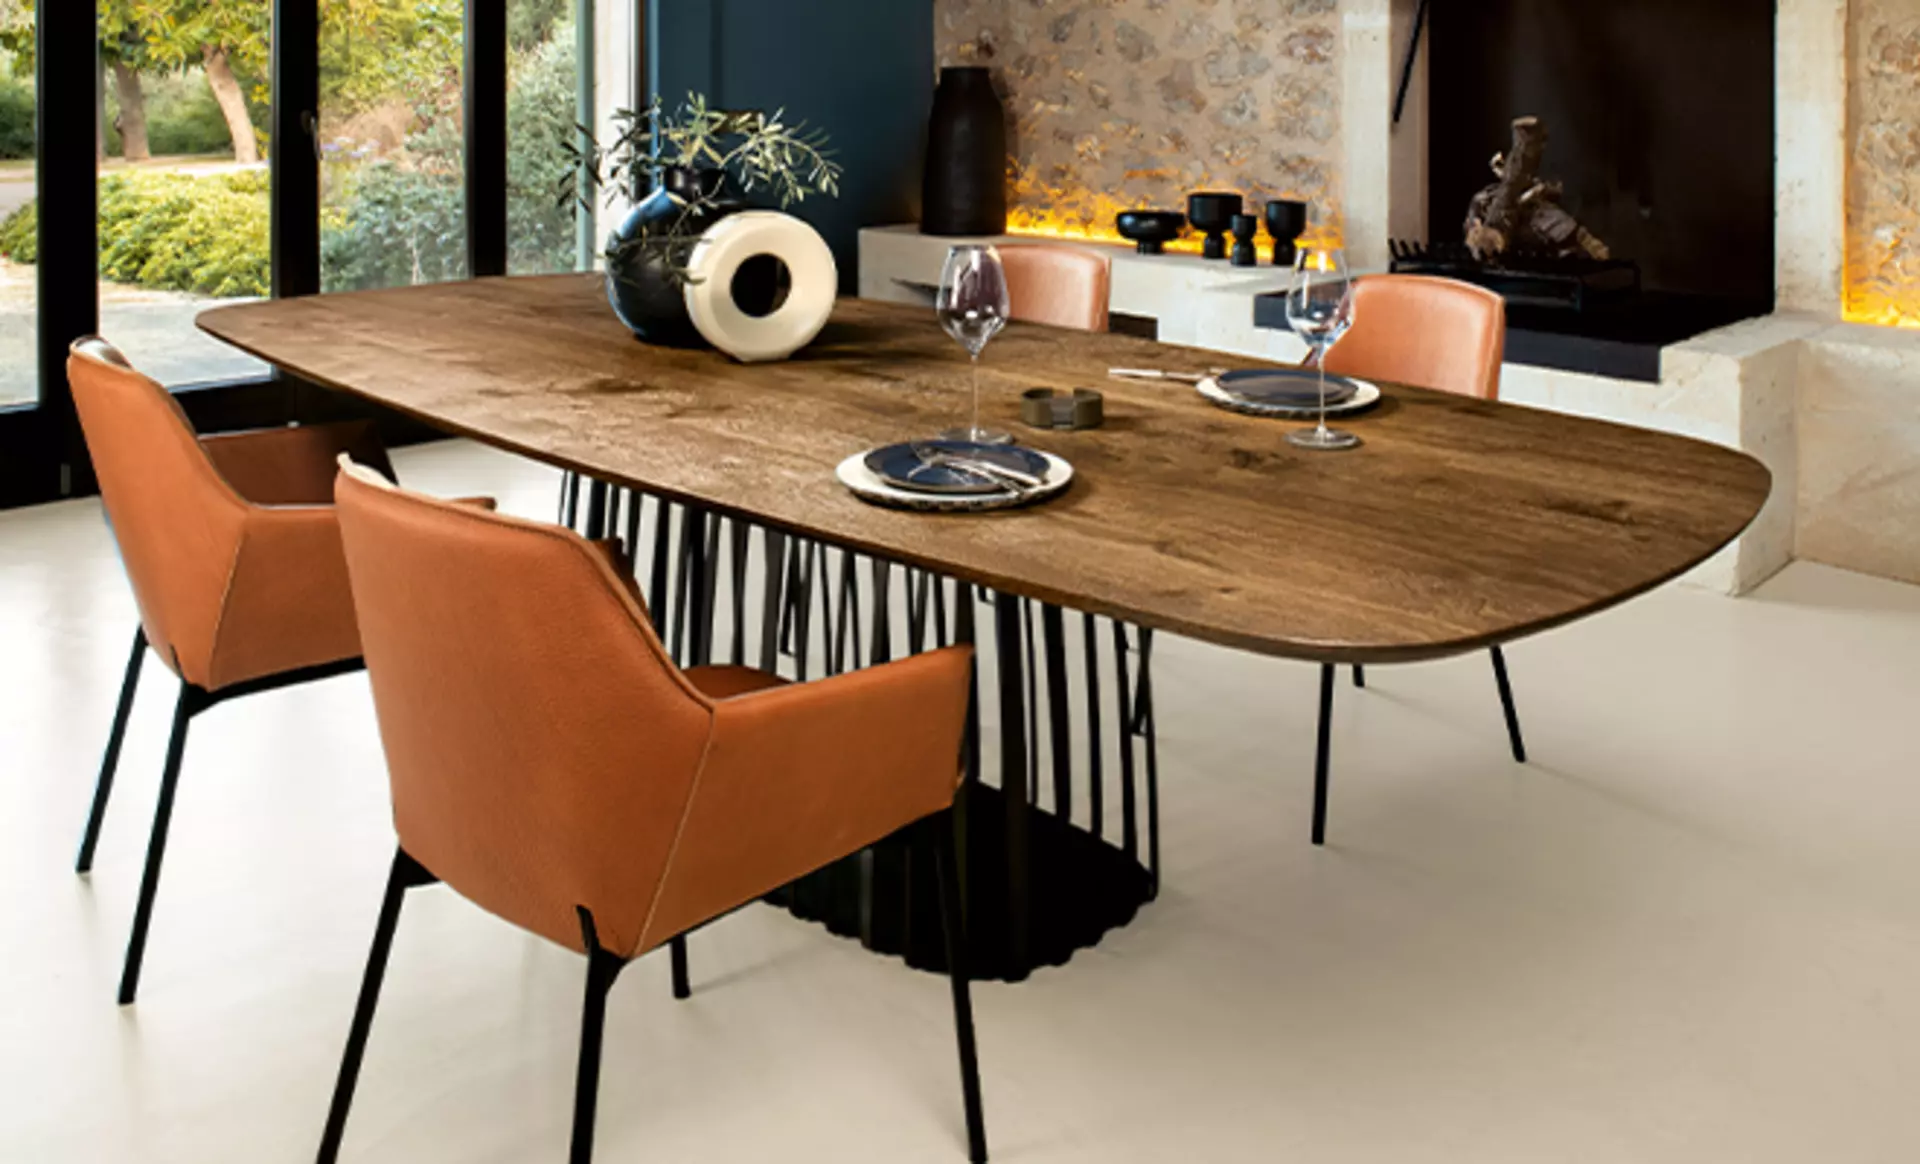 Designer Tische mit Charakter - nachhaltiges Interior von Janua